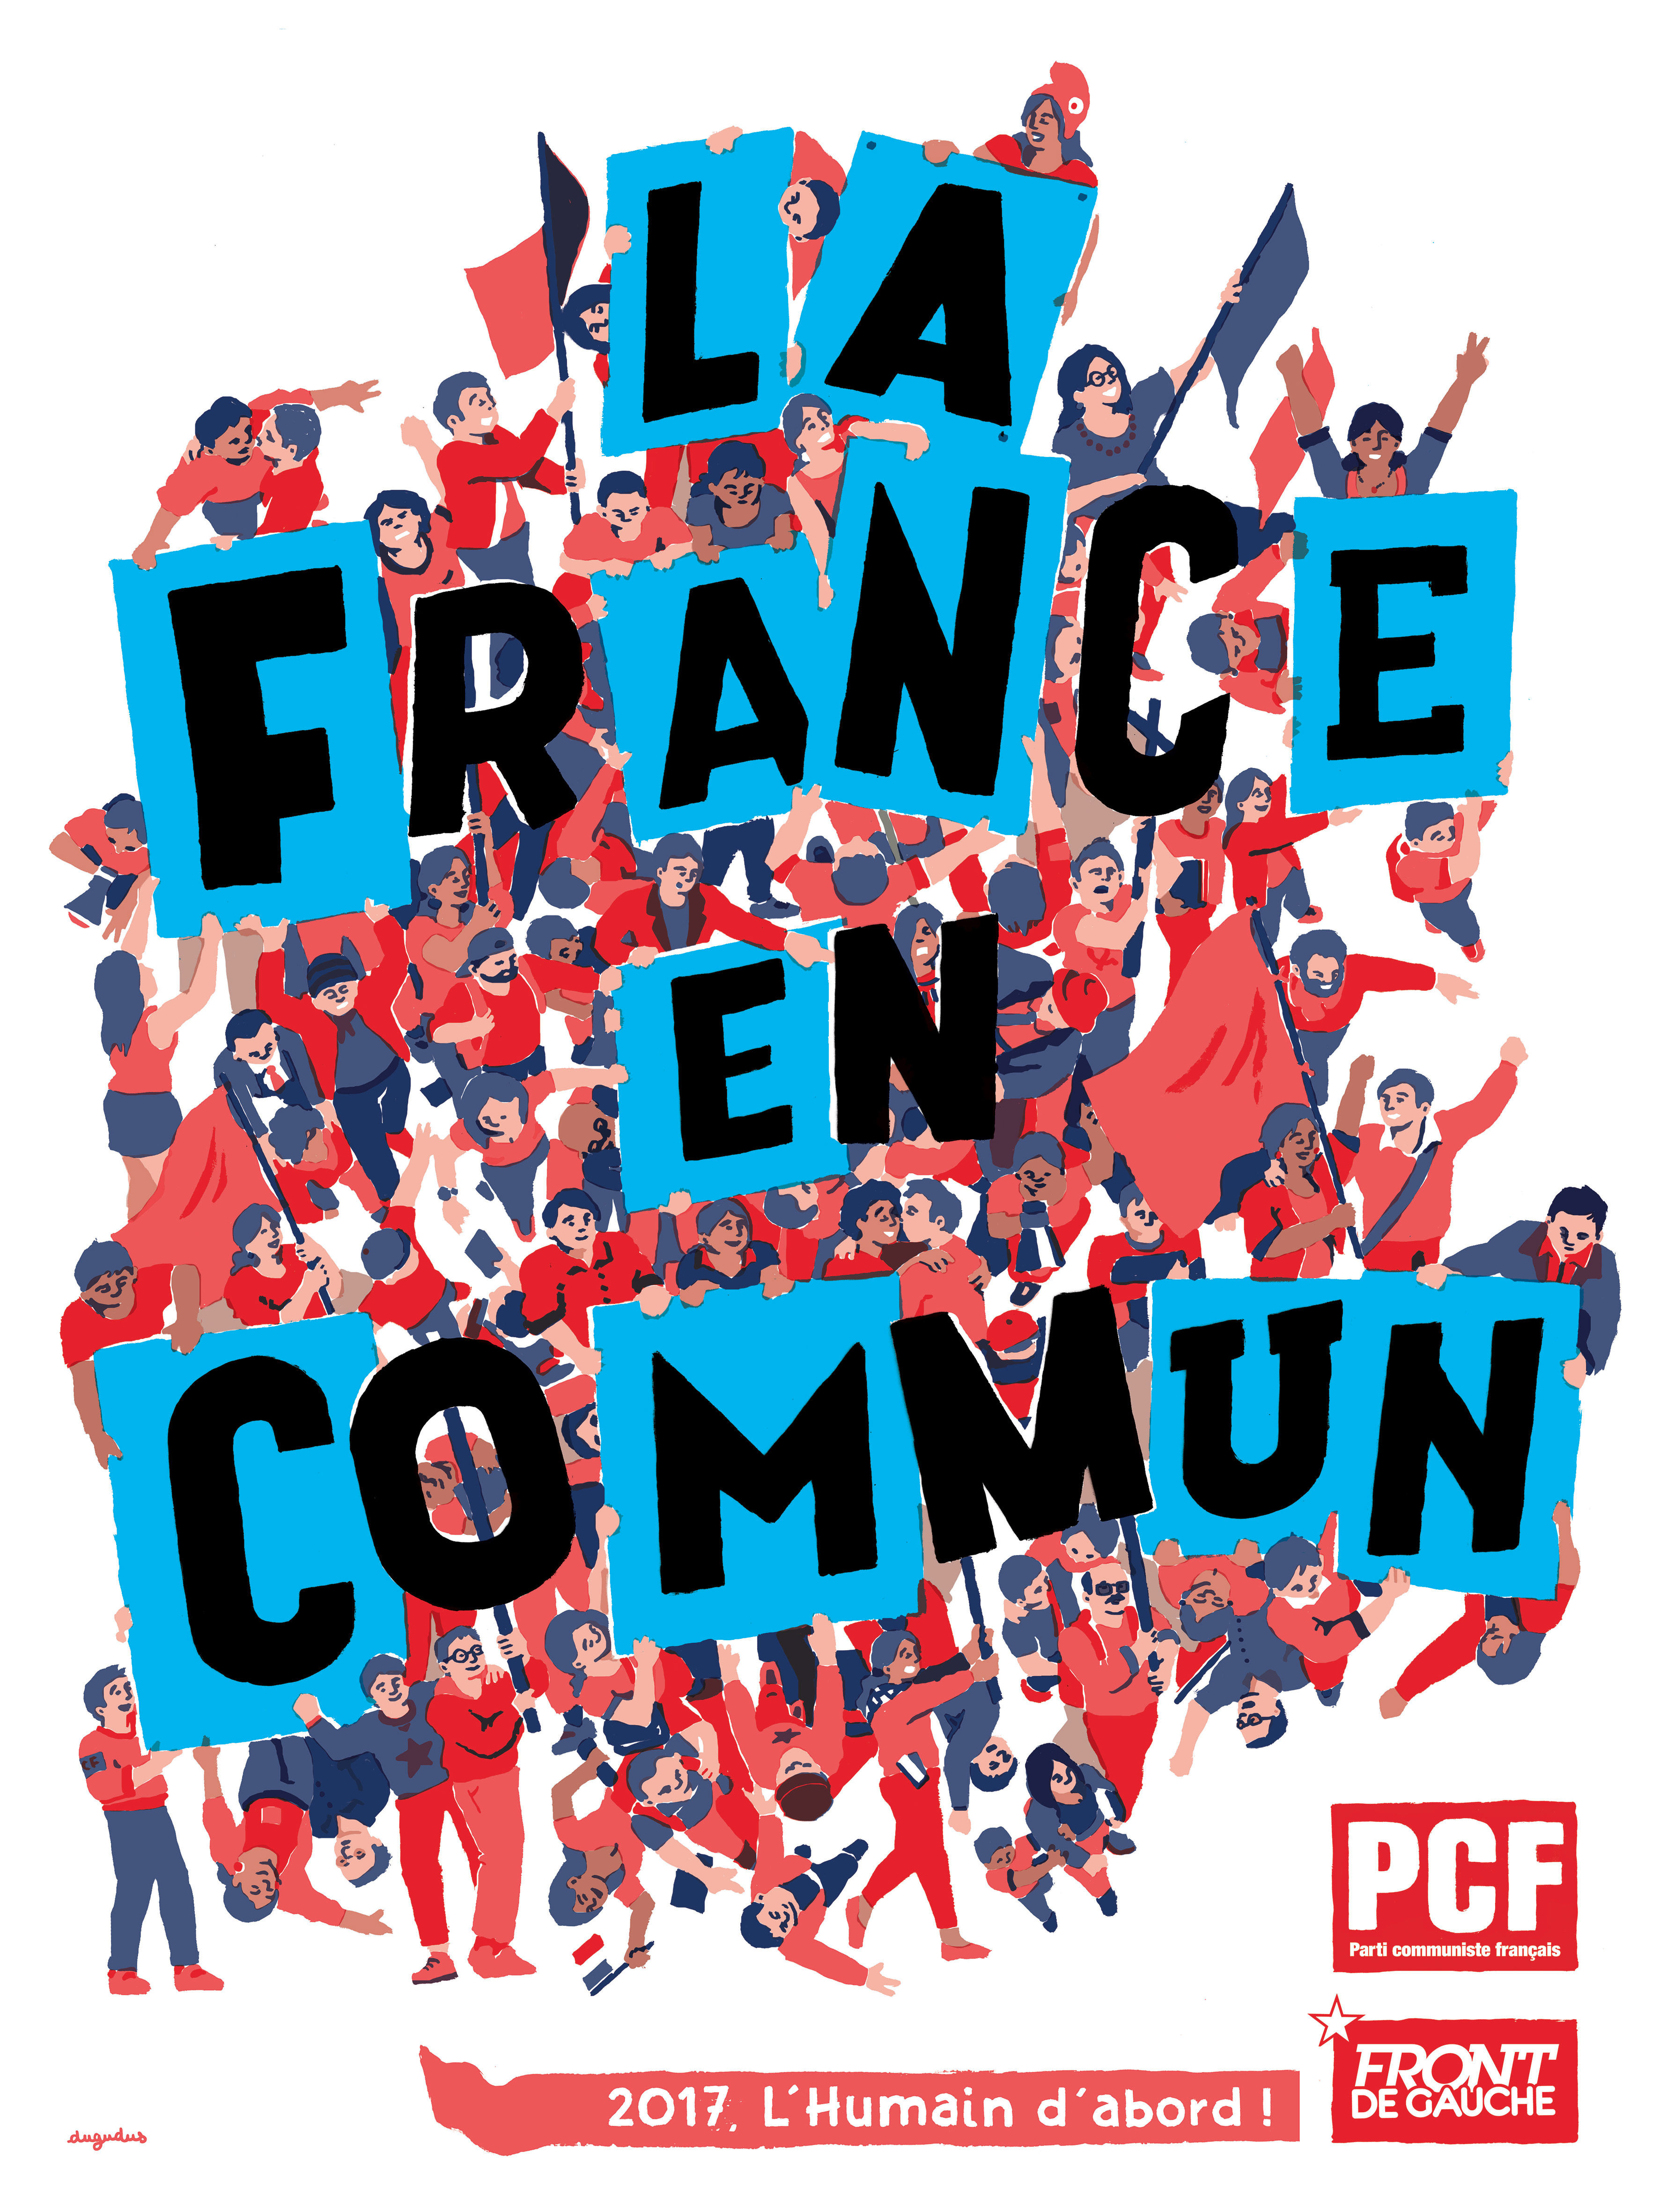 Le programme du PCF : La France en Commun